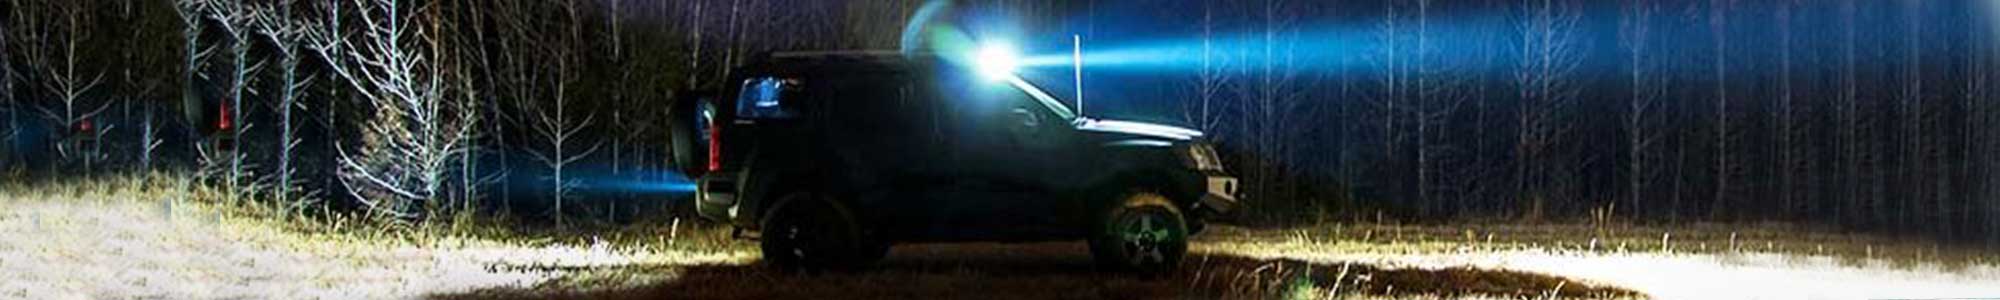 Bil med scenebelysning som lyser opp et stort område rundt bilen i mørket